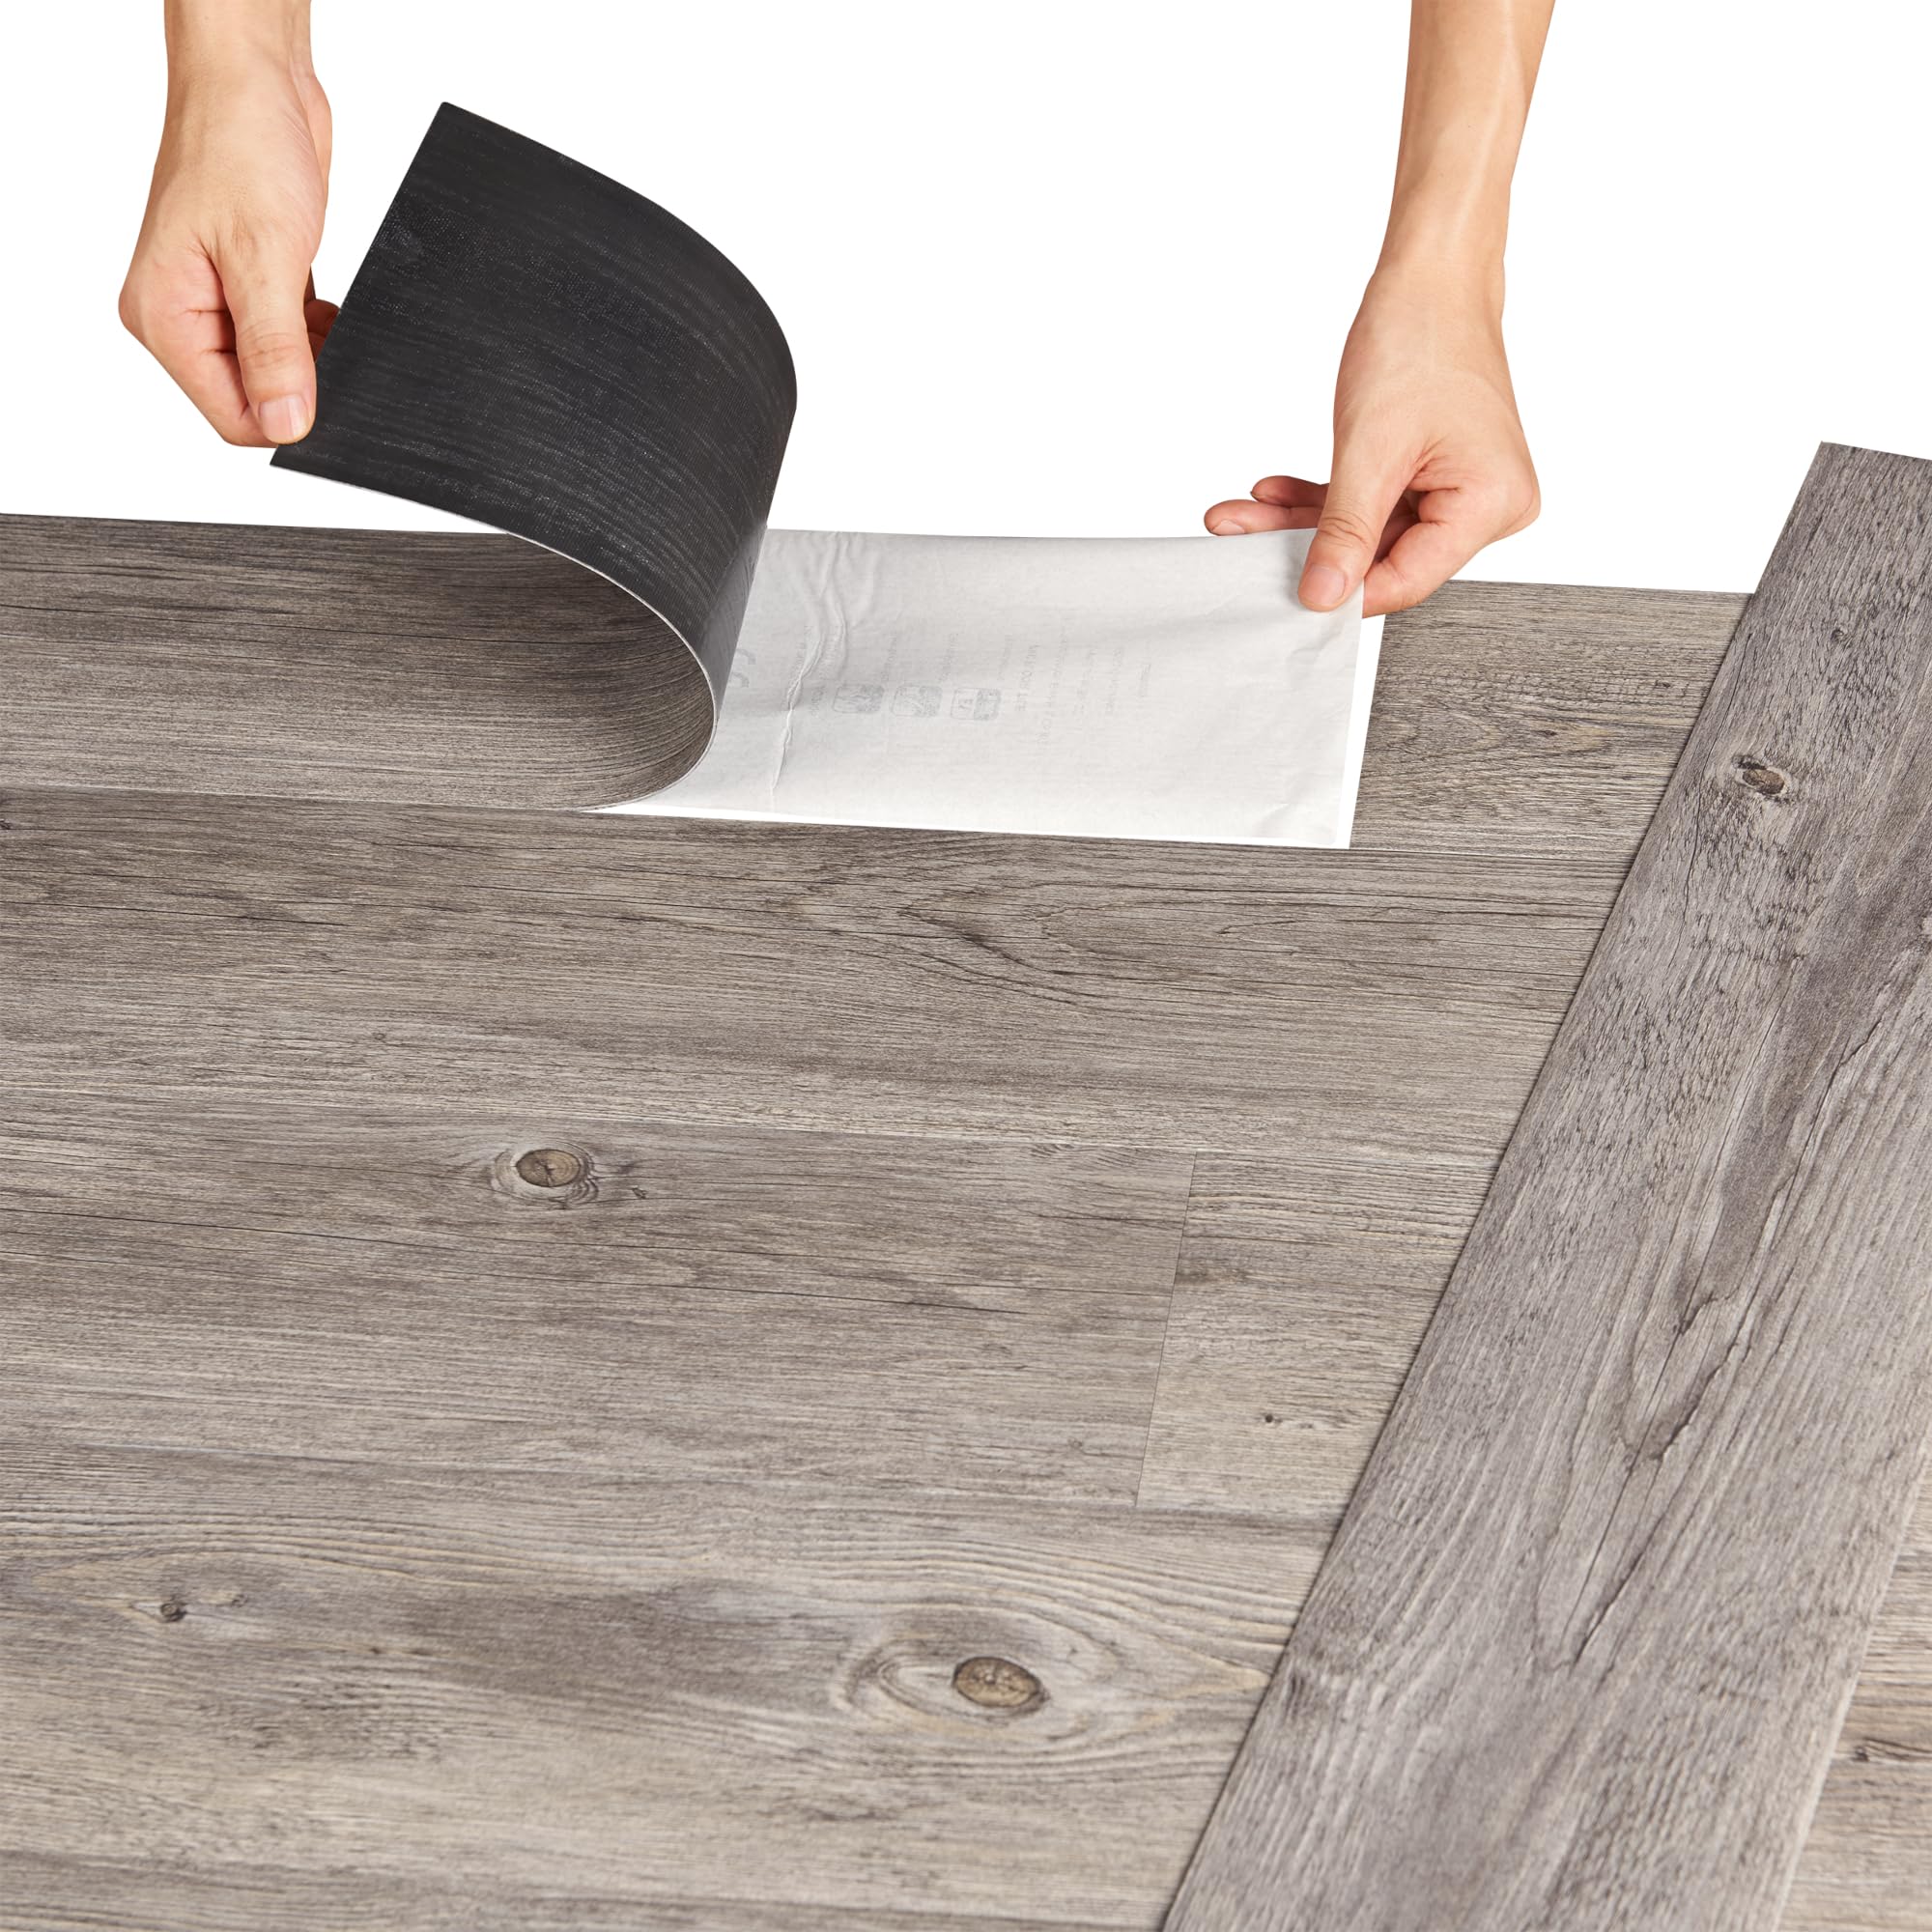 neu.holz Vinylboden Vanola Laminat Selbstklebend rutschfest Antiallergen Bodenbelag PVC-Platten 5,85 m² Grey Alaska Oak